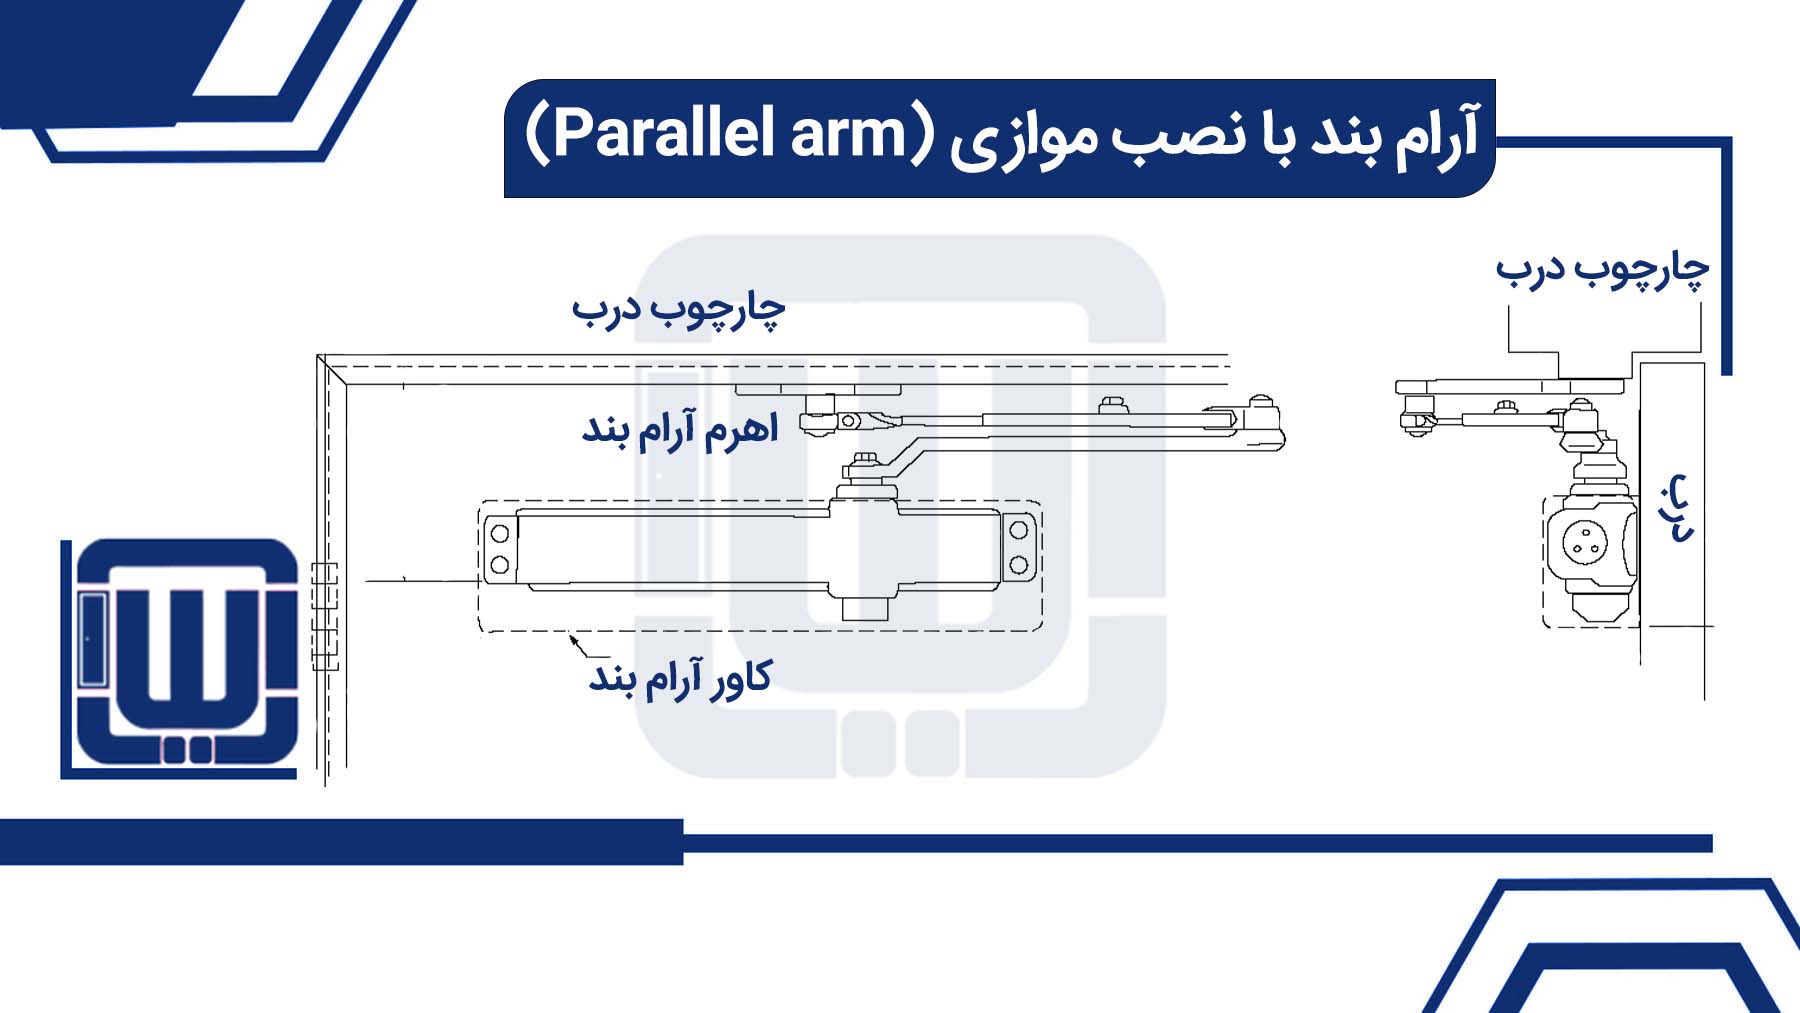 آرام بند با نصب موازی (Parallel arm)